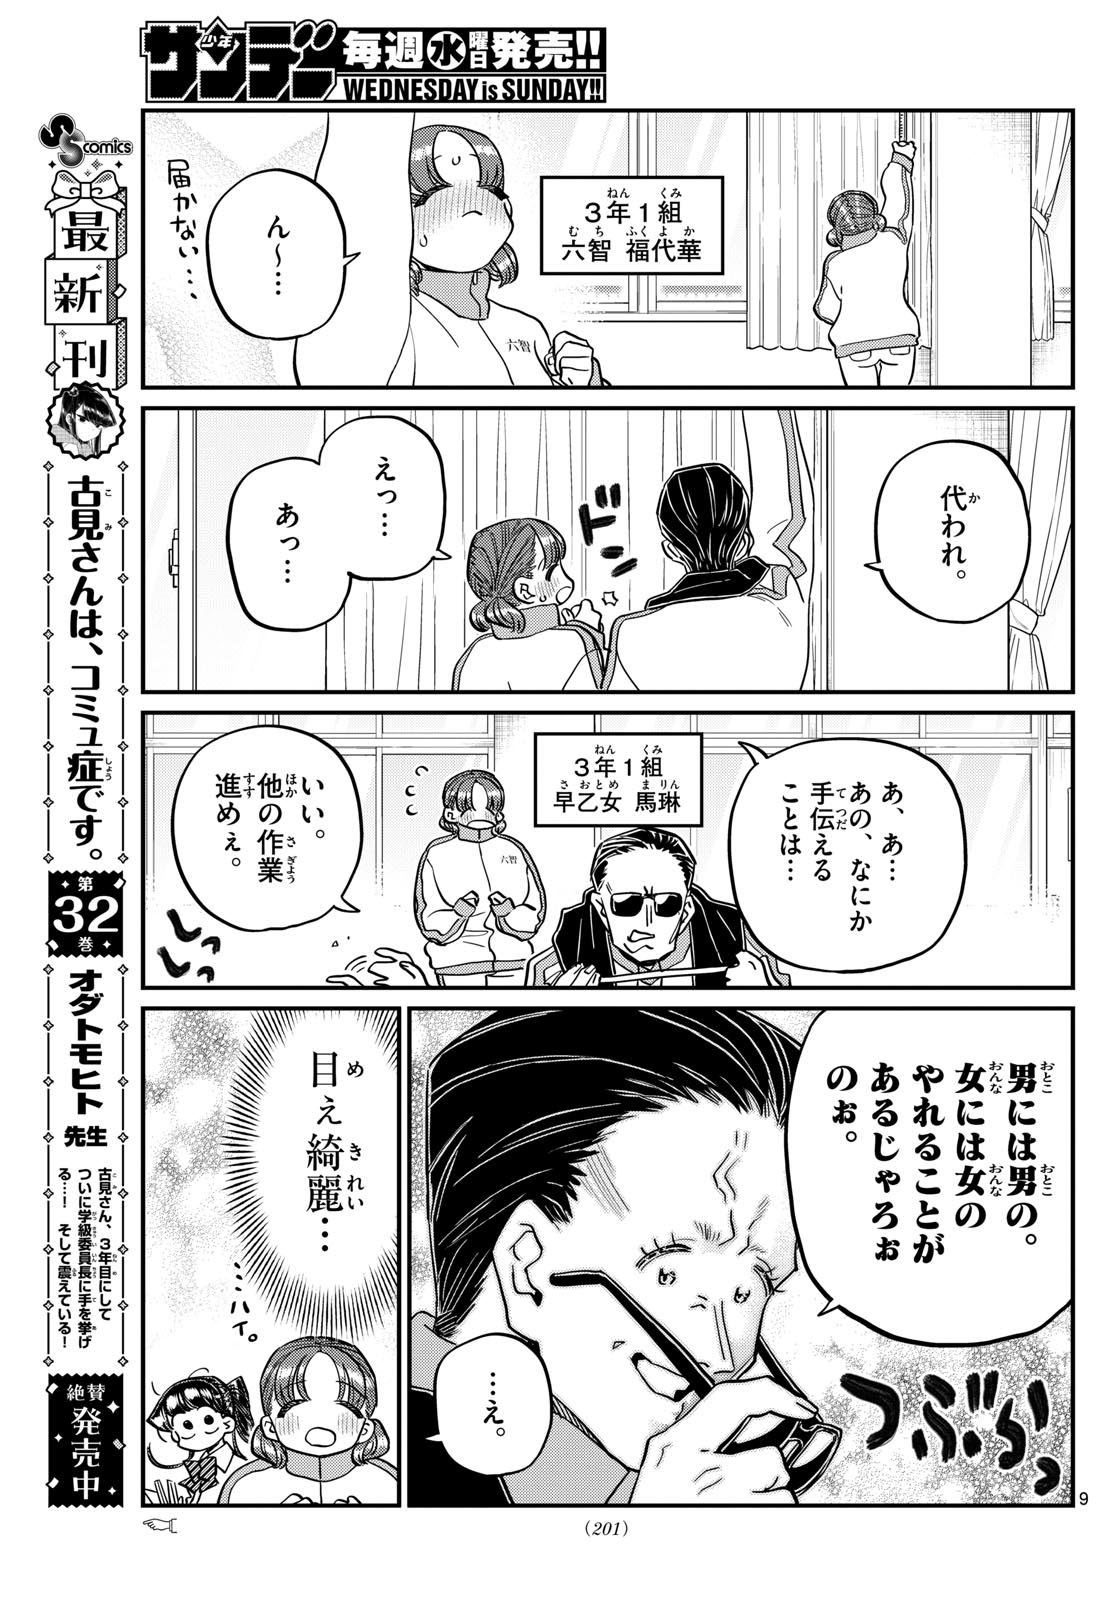 Komi-san wa Komyushou Desu - Chapter 448 - Page 9